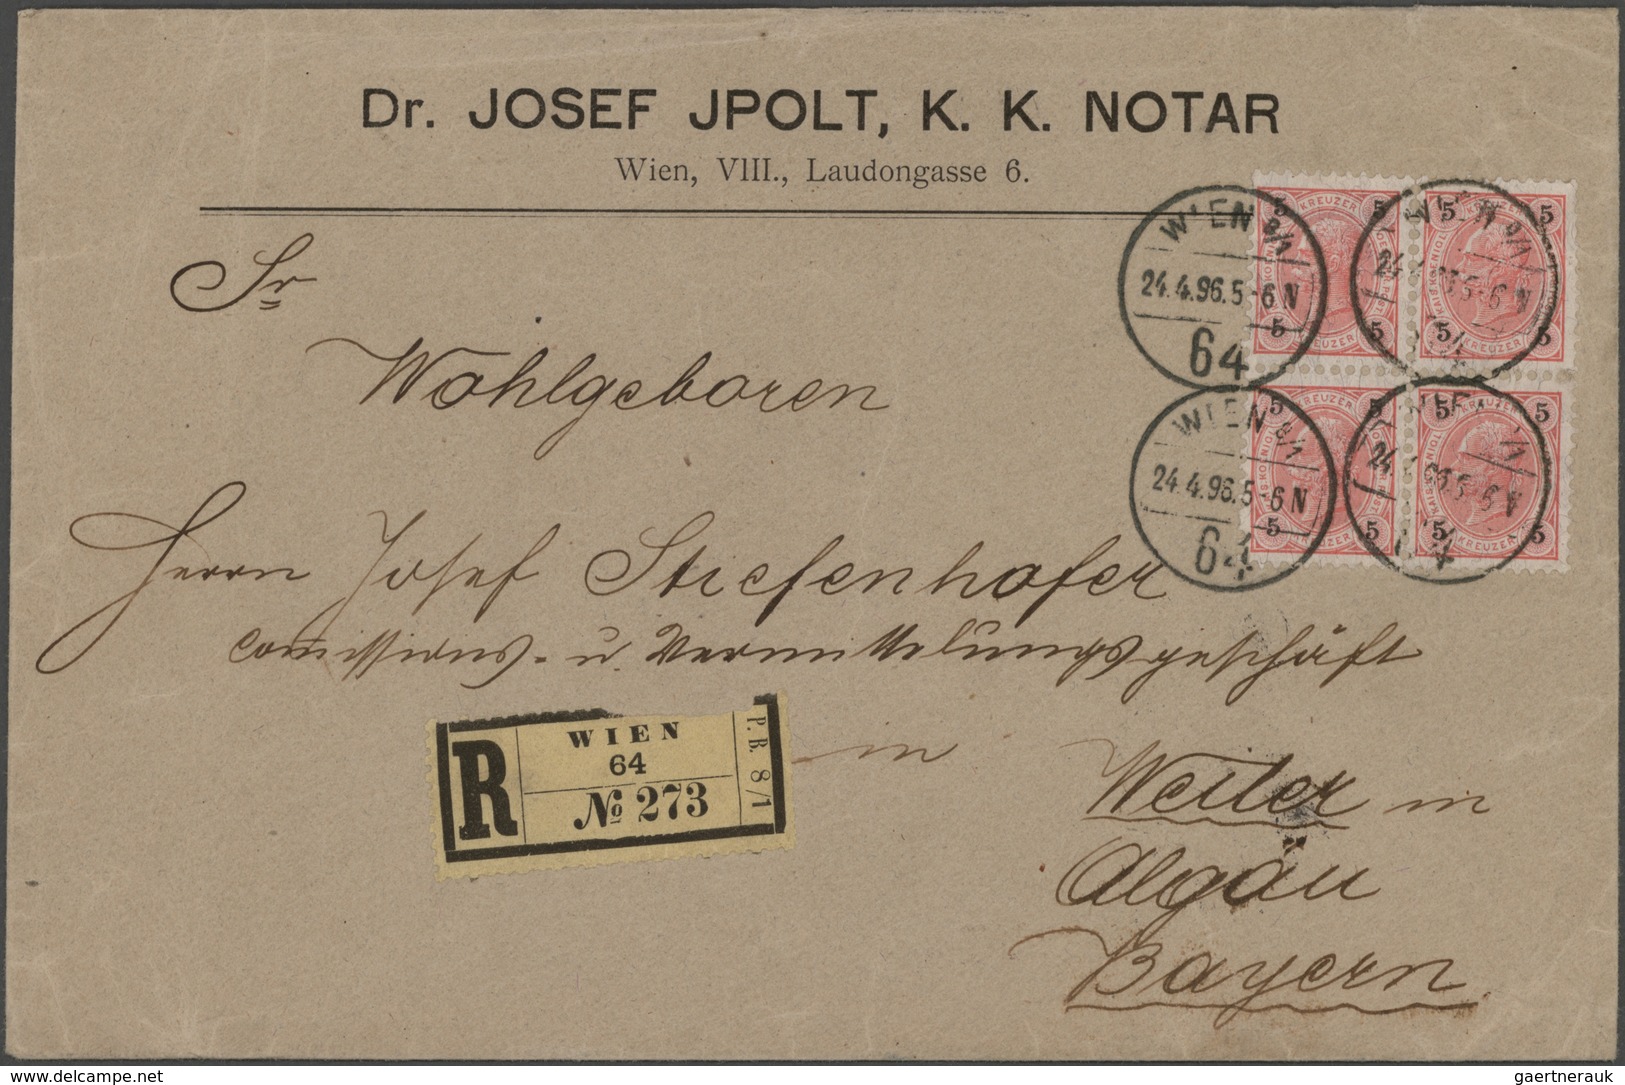 Österreich: 1850/1950 (ca.), vielseitiger Bestand von über 400 Briefen und Karten, etwas unterschied